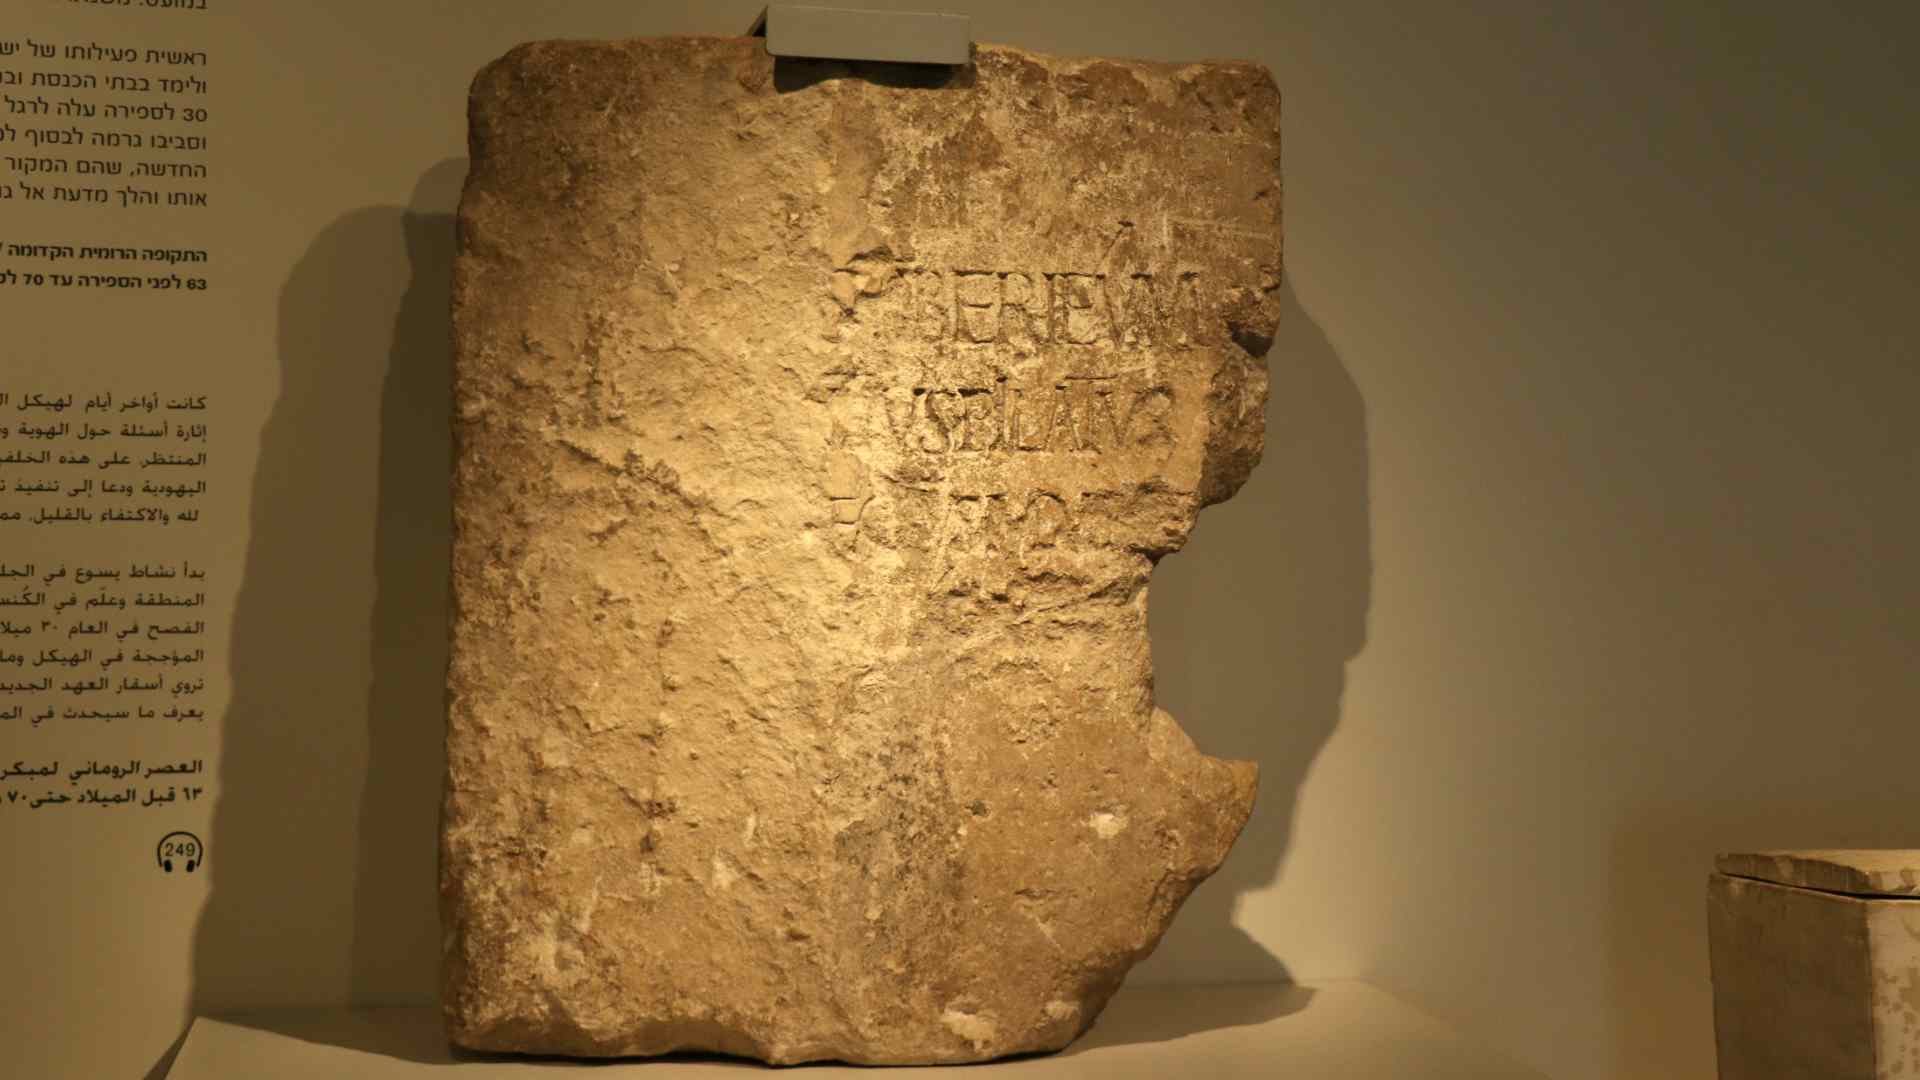 Inscription mentionnant Pilate retrouvée à Césarée - Musée d'Israël - Photo P. Vauclair